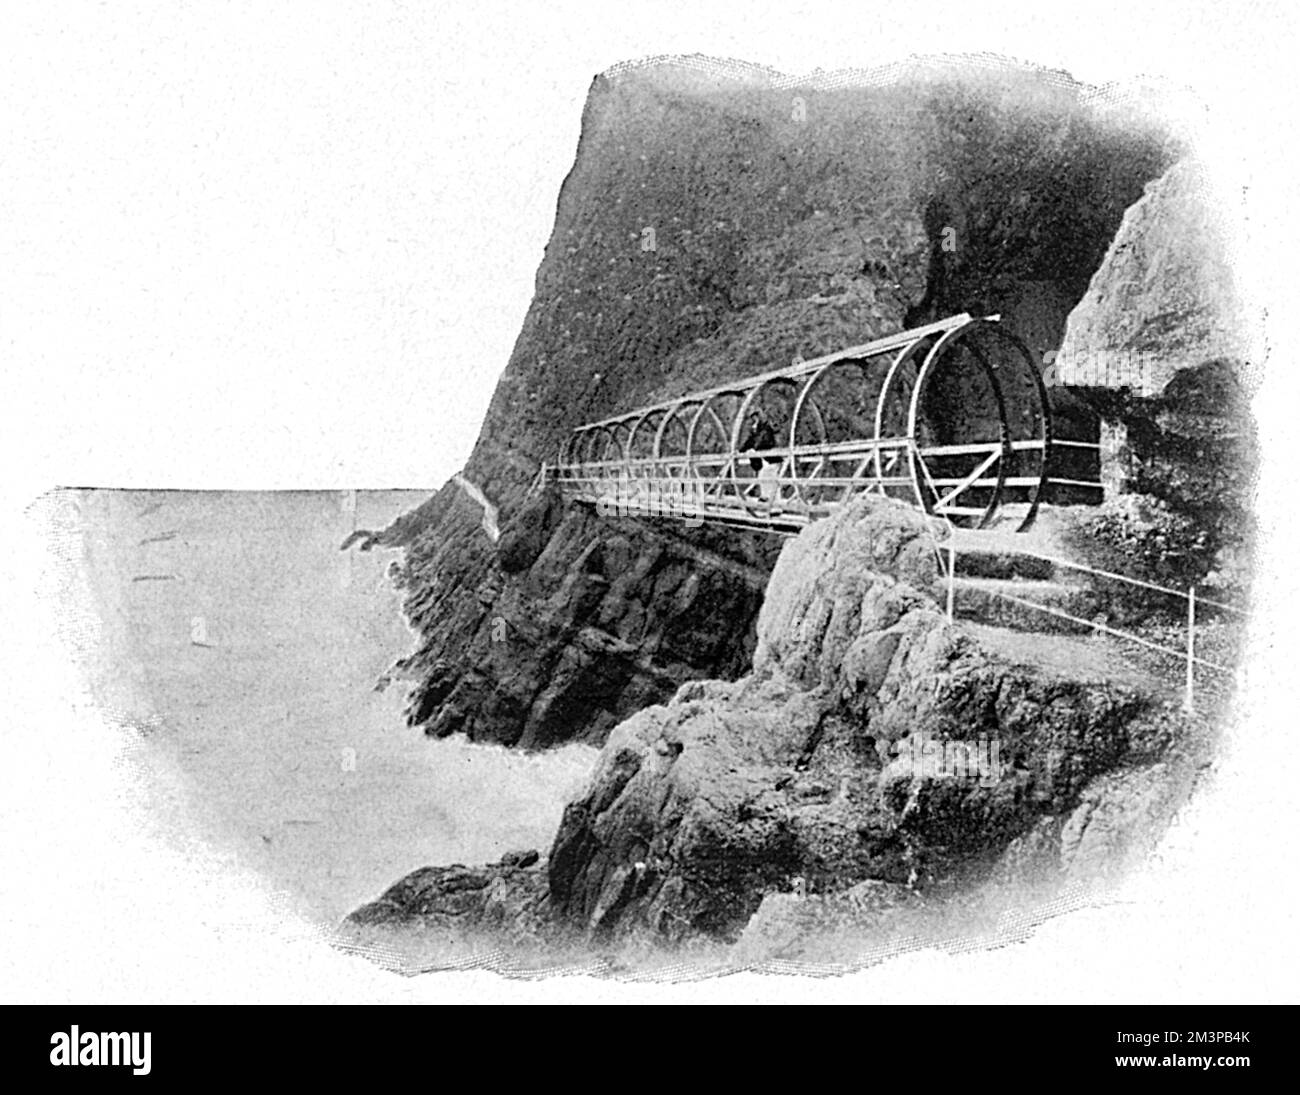 Der Gobbins Cliff Path in Islandmagee, County Antrim, Nordirland. Dieses Bild zeigt die felsige Küste mit Brücke und Pfad, die entlang der Seite der Klippe gebaut wurden. Der malerische Küstenweg wurde von Ingenieur Berkeley Deane Wise erbaut. Datum: 1907 Stockfoto